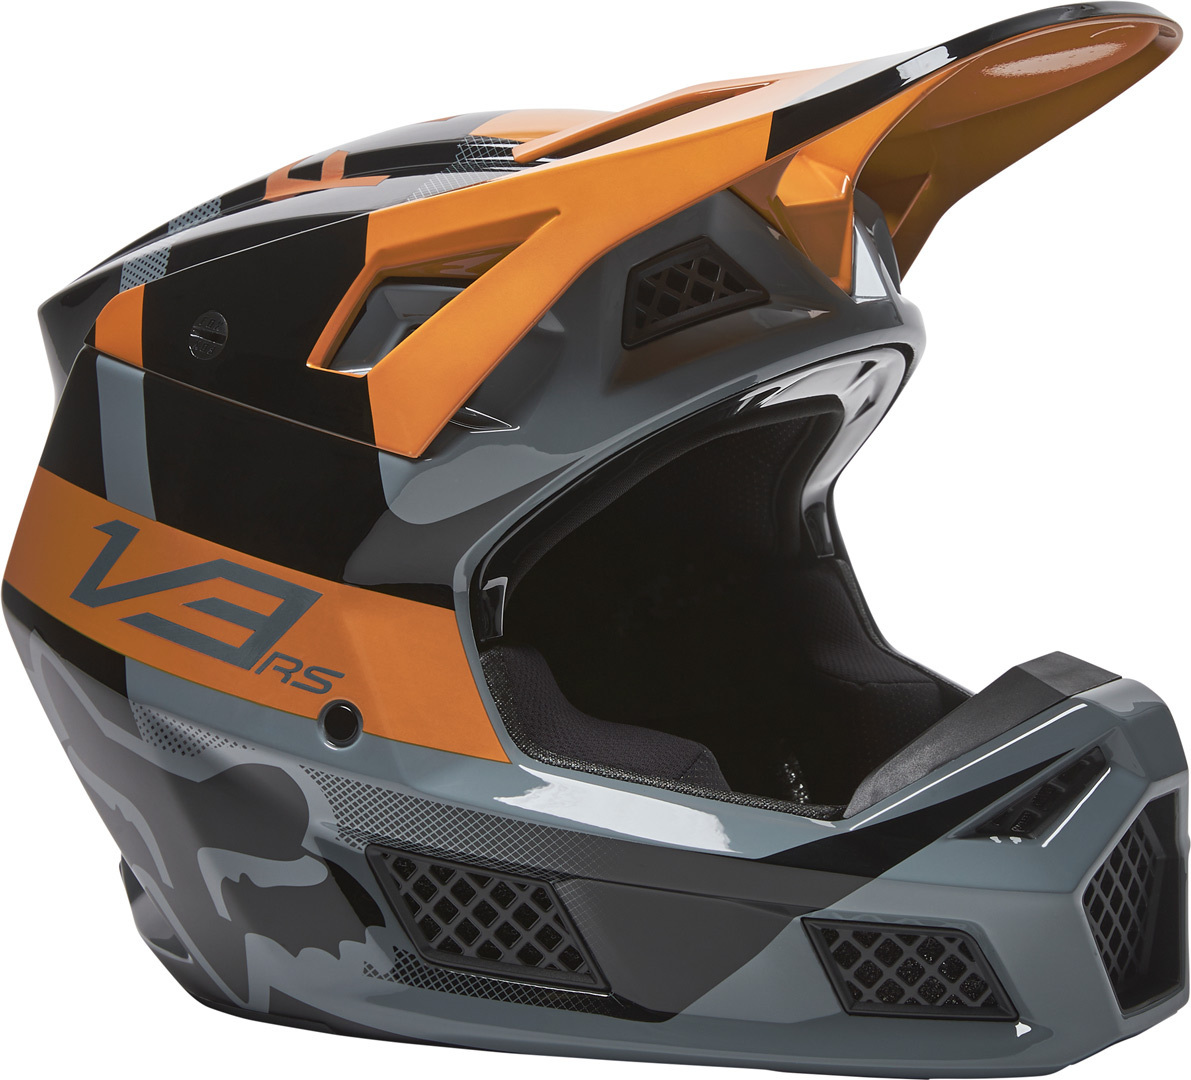 Fox V1 Trice Casco de Motocross - mejores precios ▷ FC-Moto